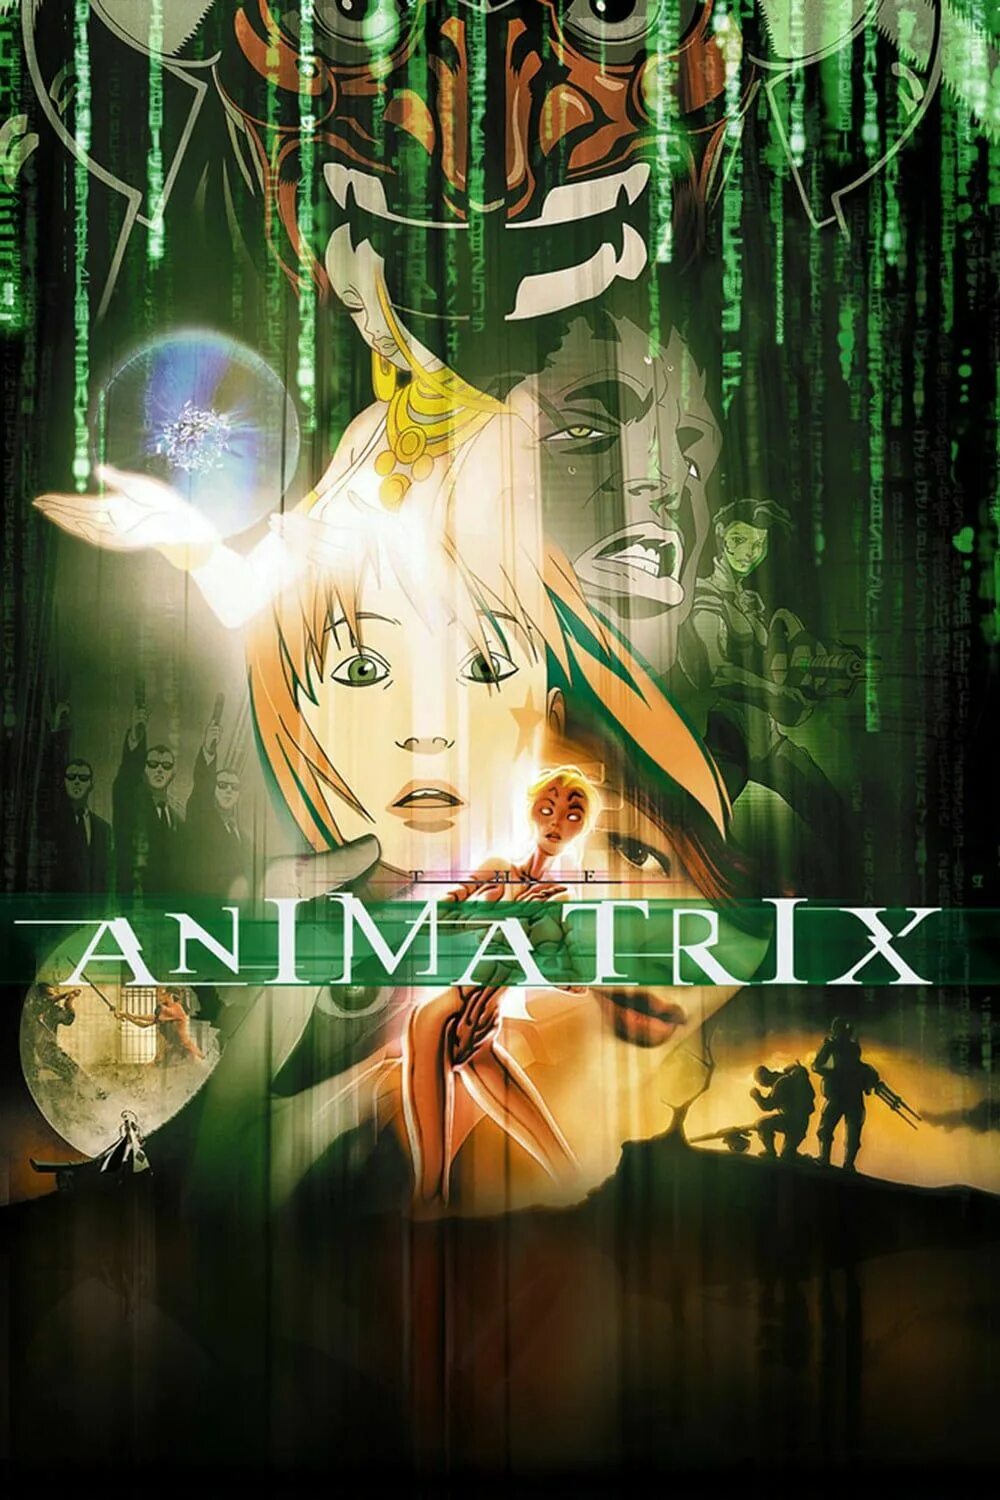 Animatrix. Аниматрица (2003). Аниматрица (the Animatrix, 2003 год). Аниматрица 2003 Постер.